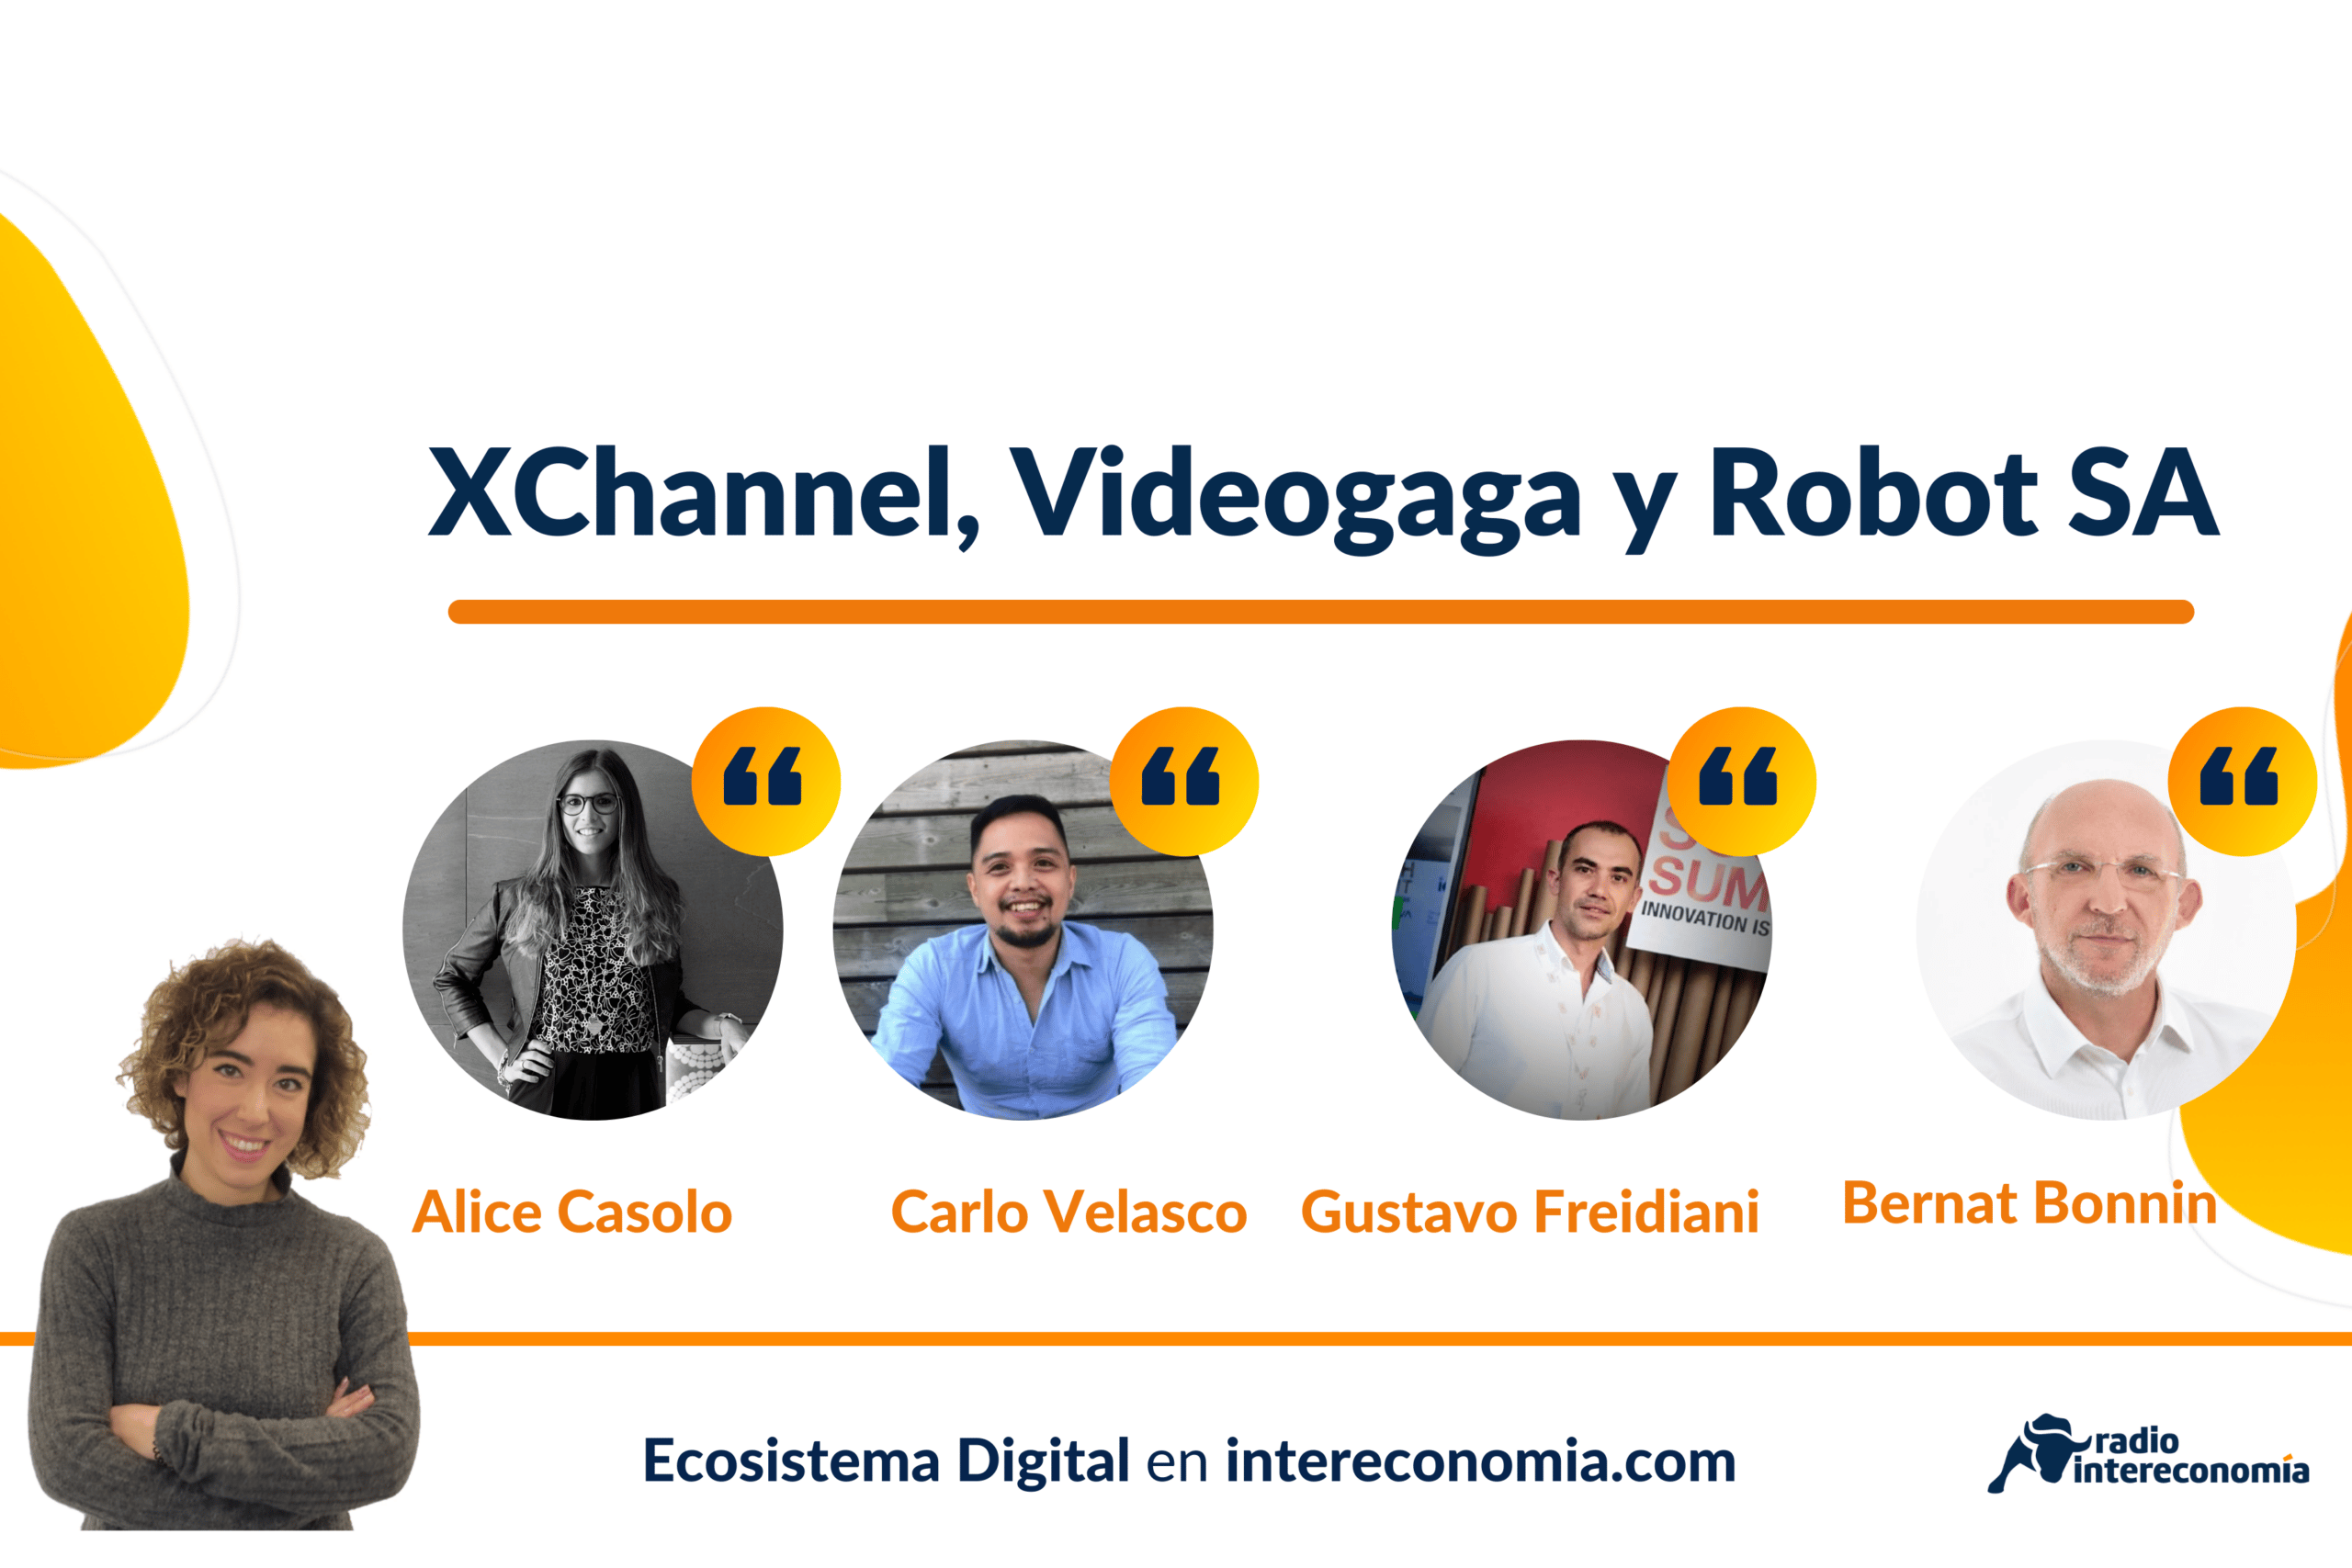 Ecosistema Digital: experiencia de cliente, Videogaga y Robot SA